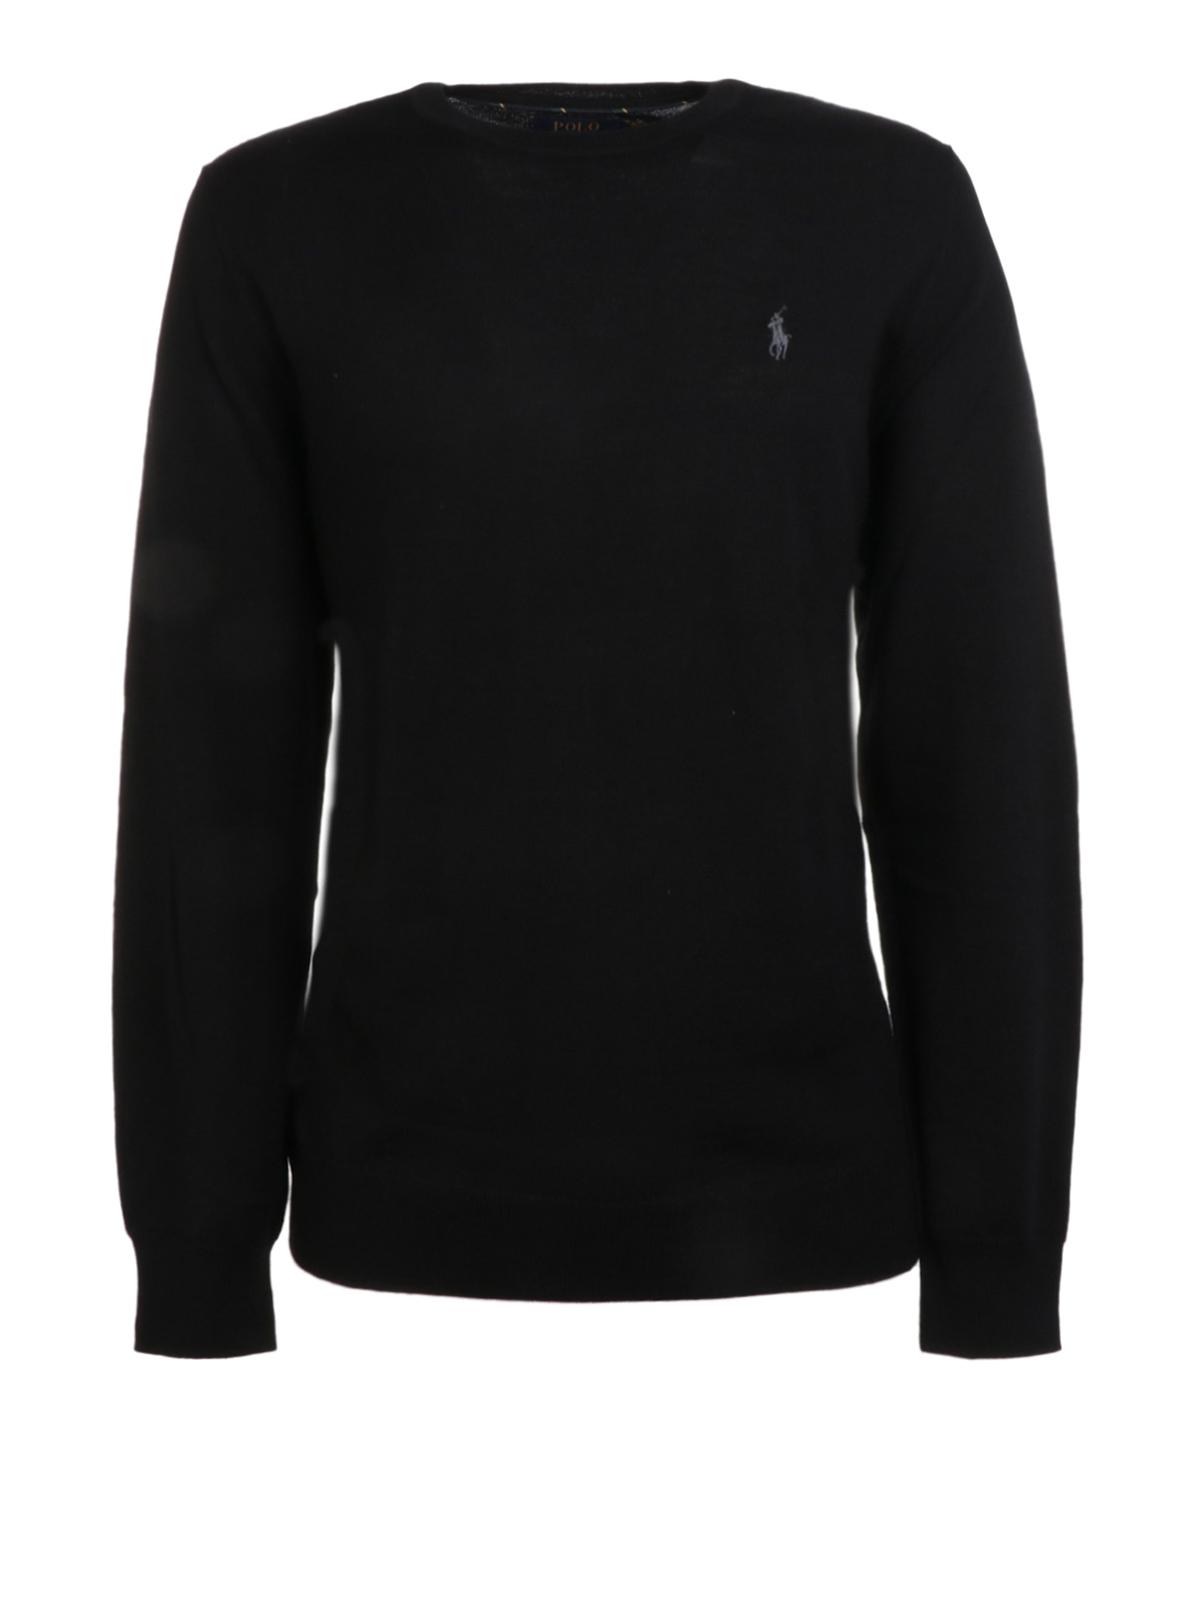 Polo Ralph Lauren Merino Wool Crew Neck Sweater in Black for Men - Lyst